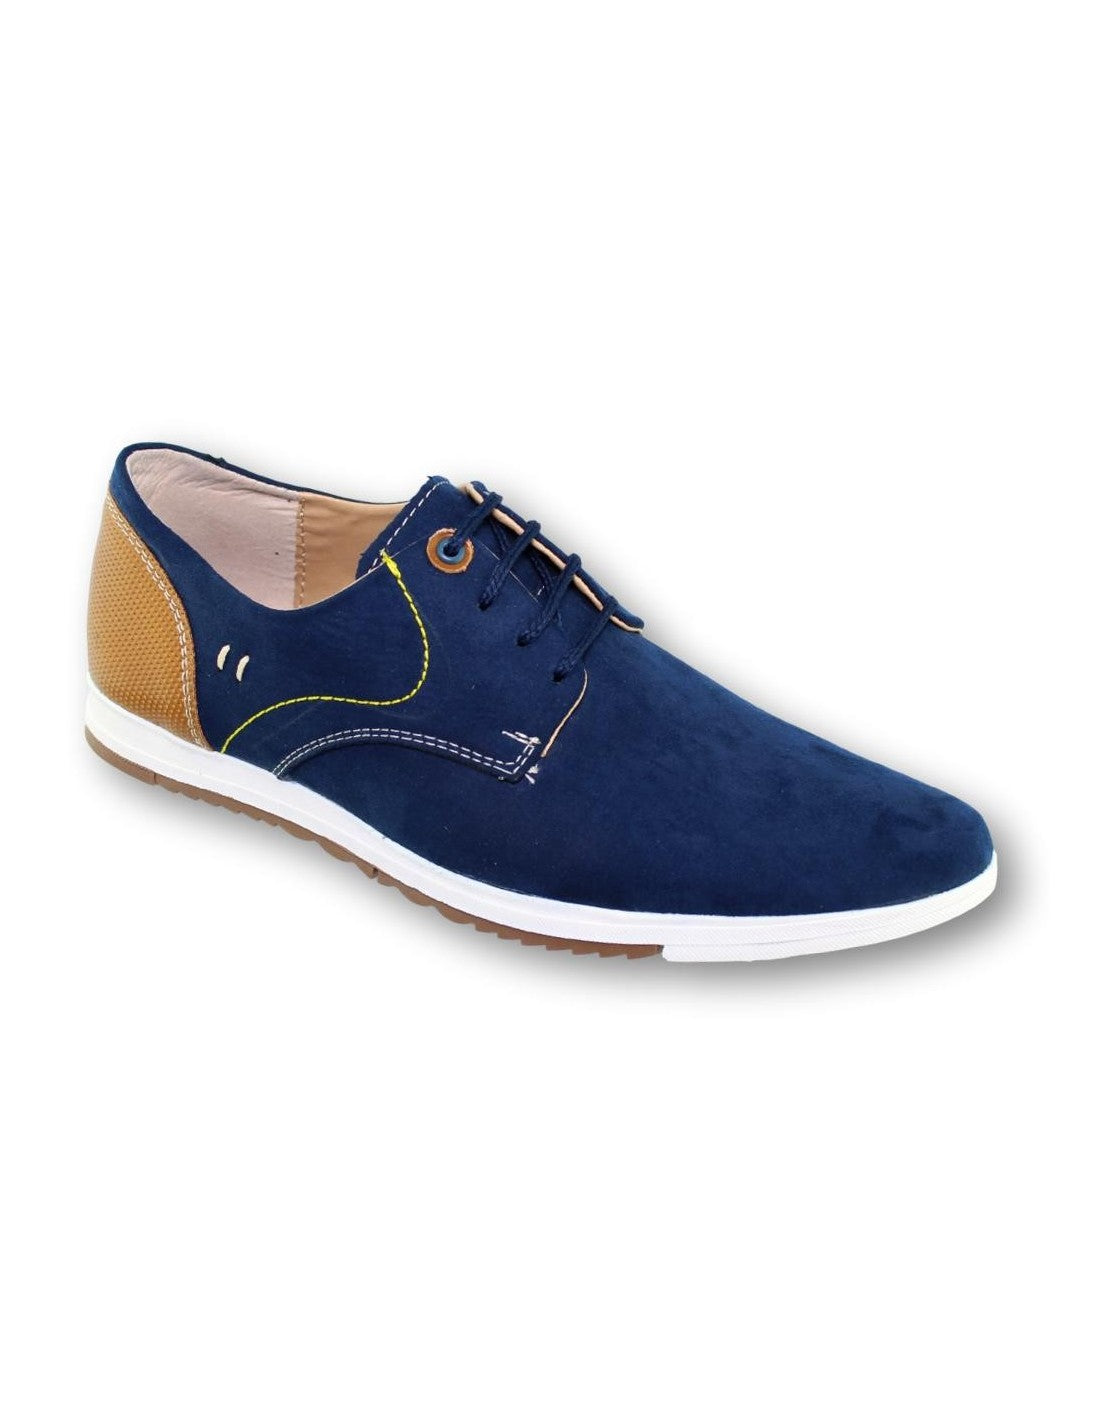 Zapatos Casuales Para Hombre Marca Albertts Durazno Color Azul Miel S. Flint Estilo 0489Al7